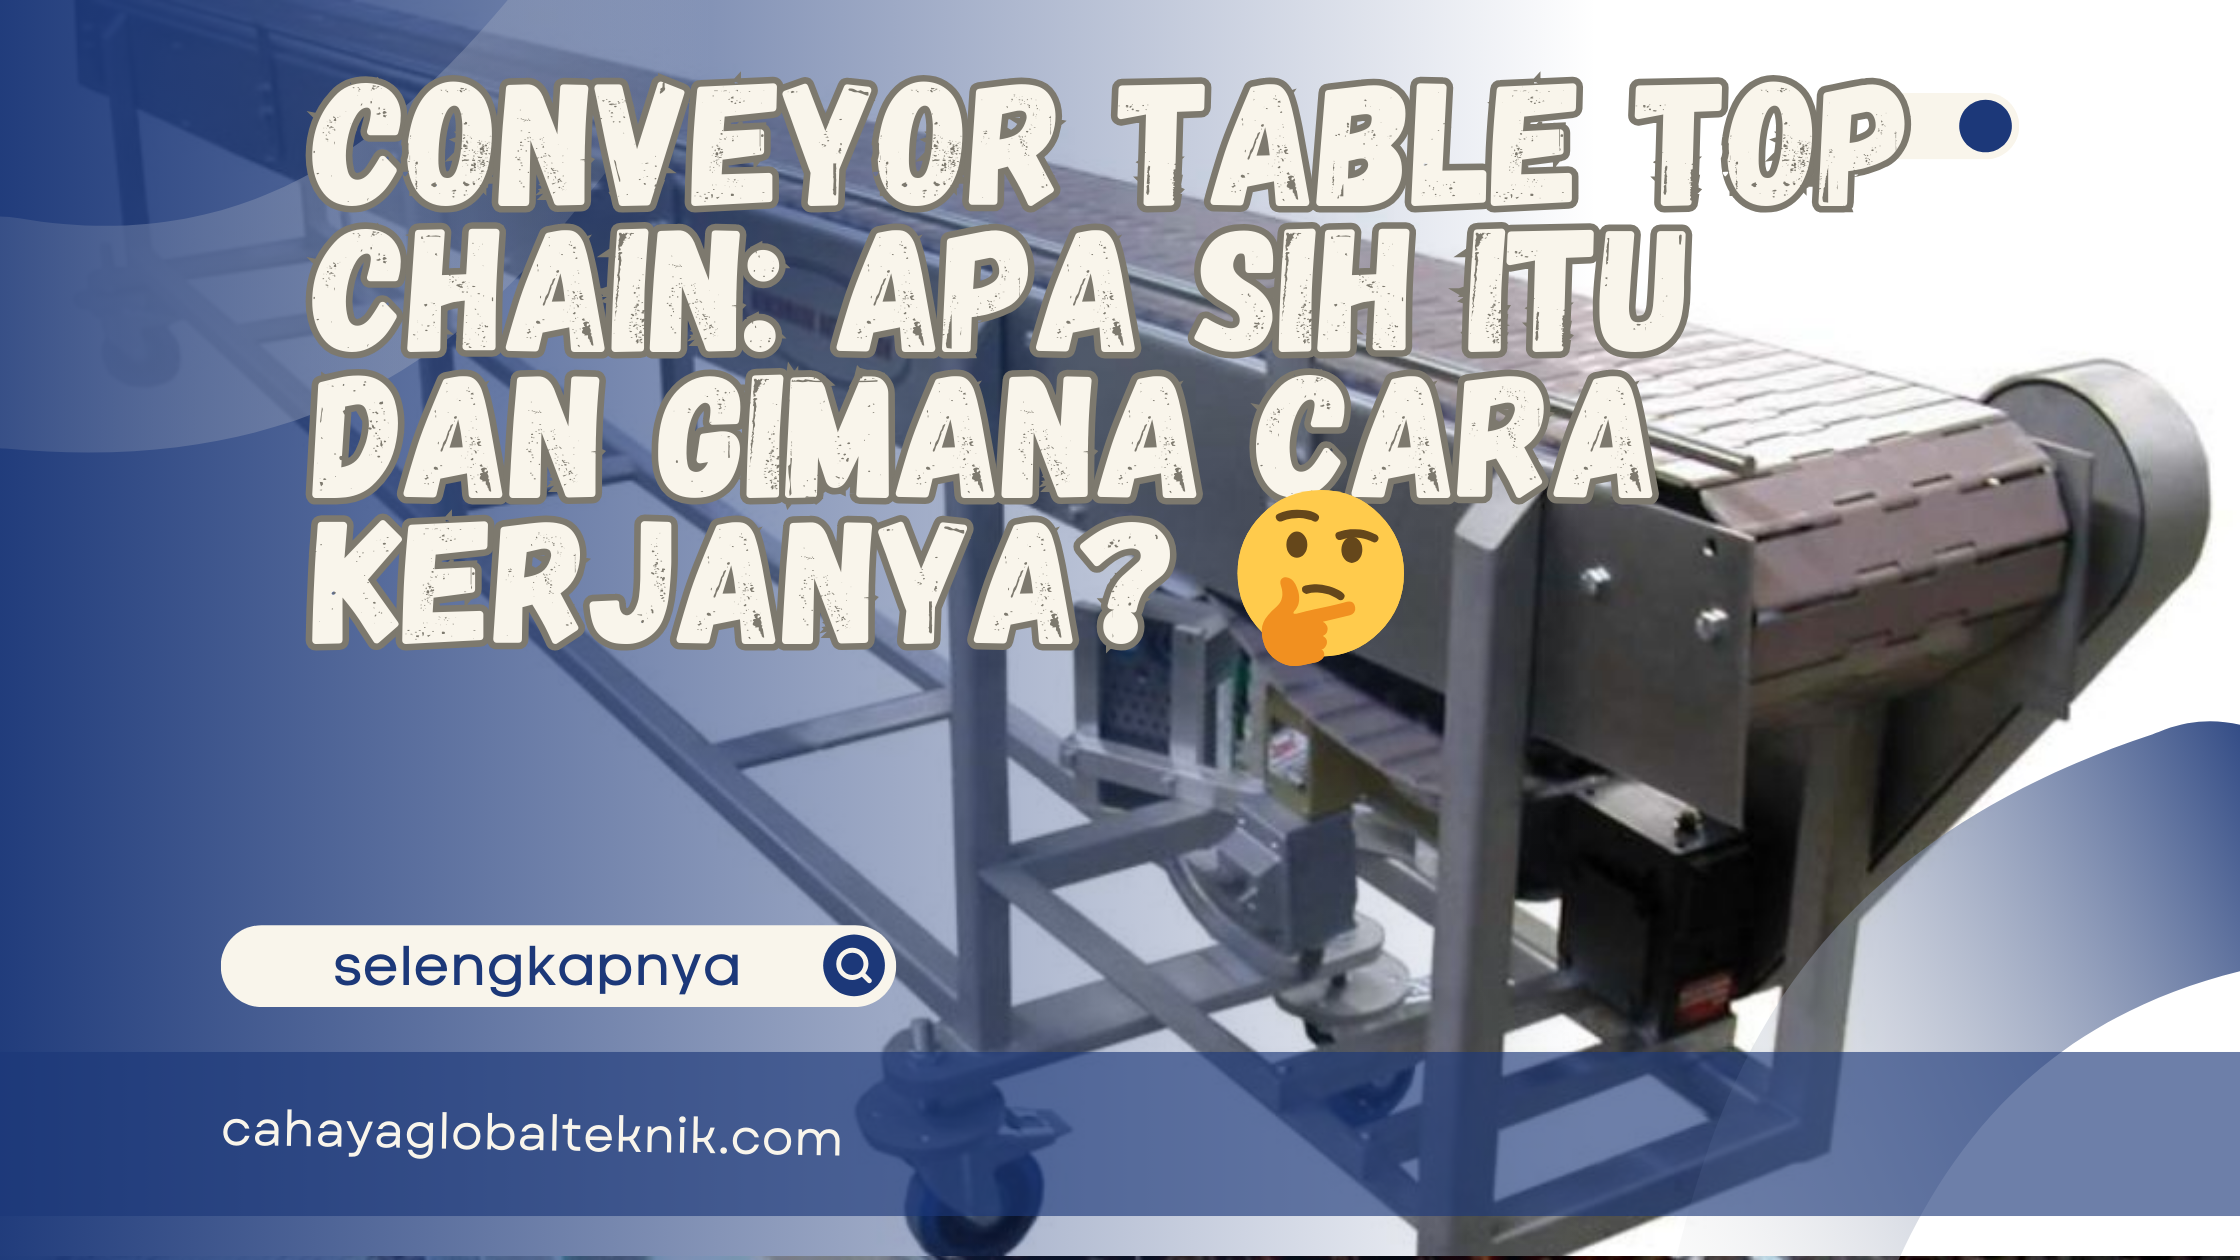 Conveyor Table Top Chain: Apa Sih Itu dan Gimana Cara Kerjanya? 🤔